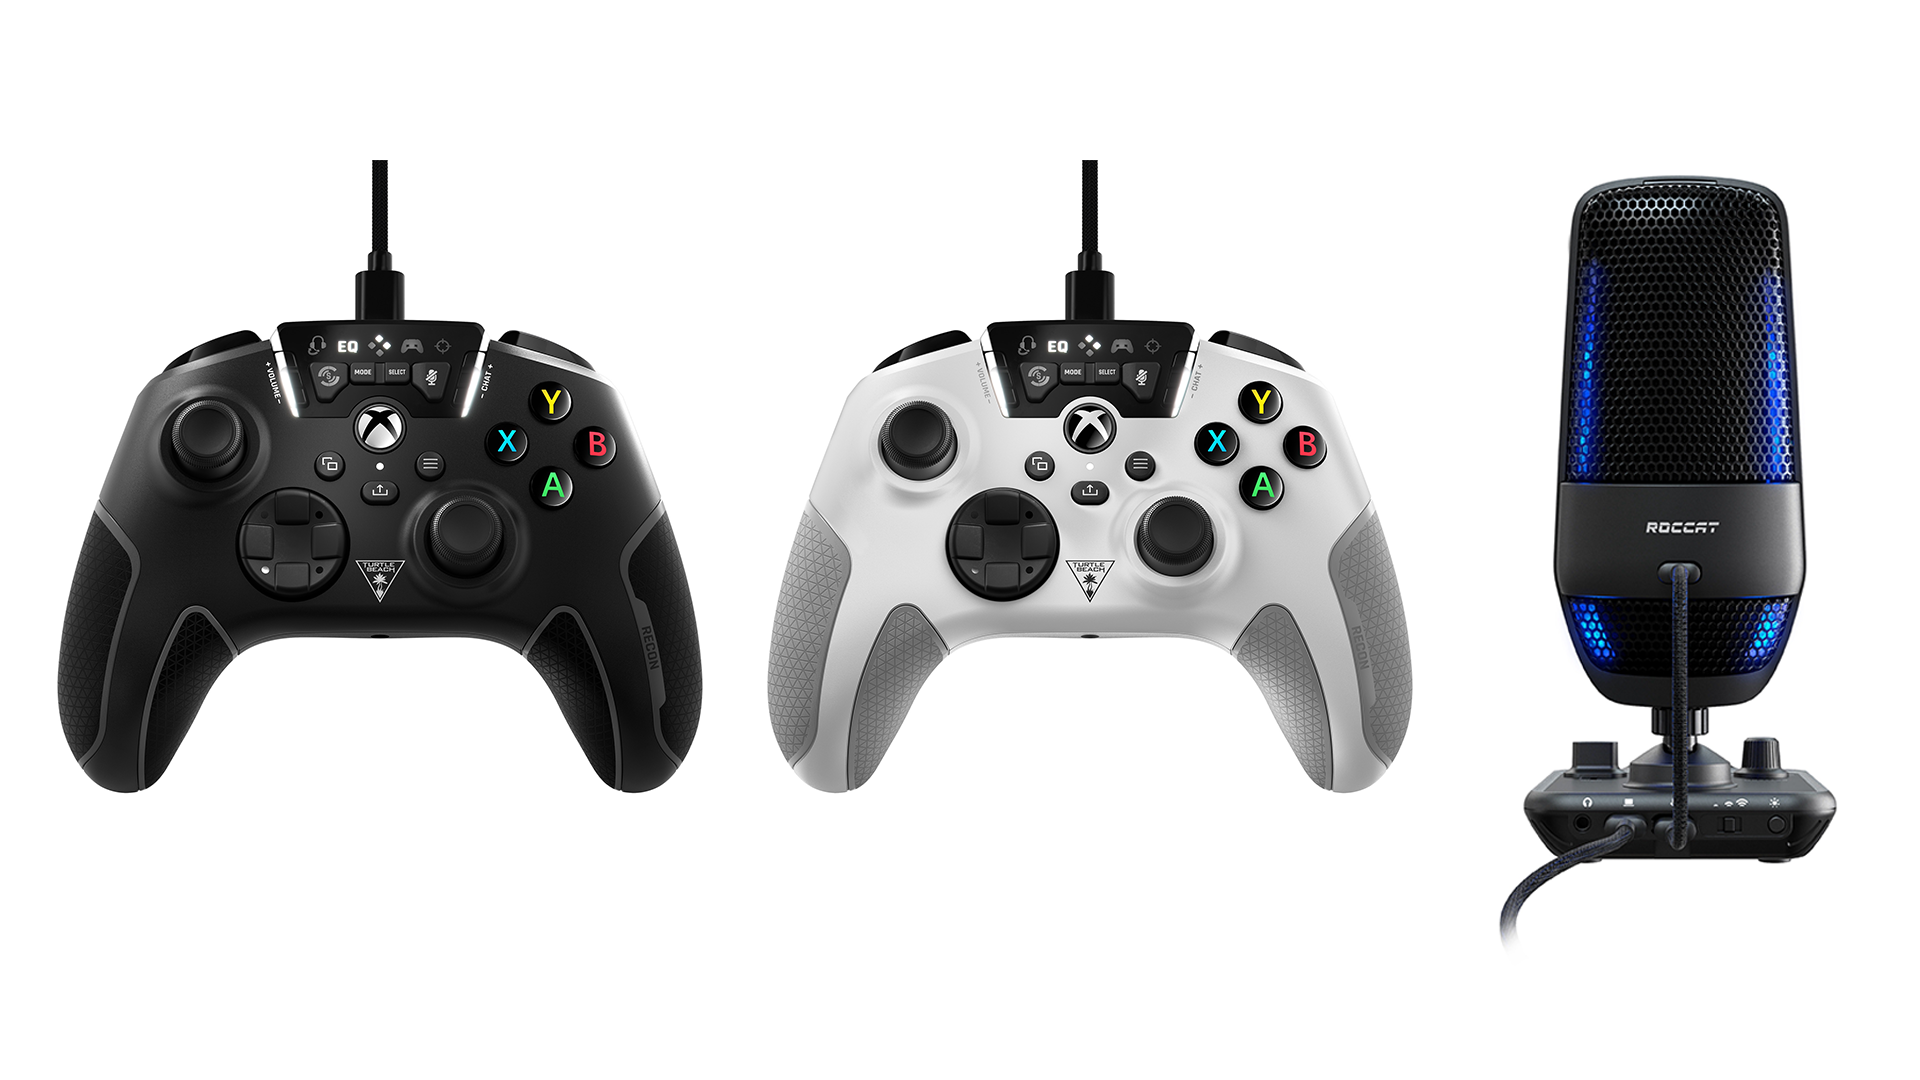 Xboxライセンス取得の有線ゲームコントローラーturtle Beach Recon Controller とroccatのストリーミングマイク Torch の販売を開始 Sb C S株式会社のプレスリリース